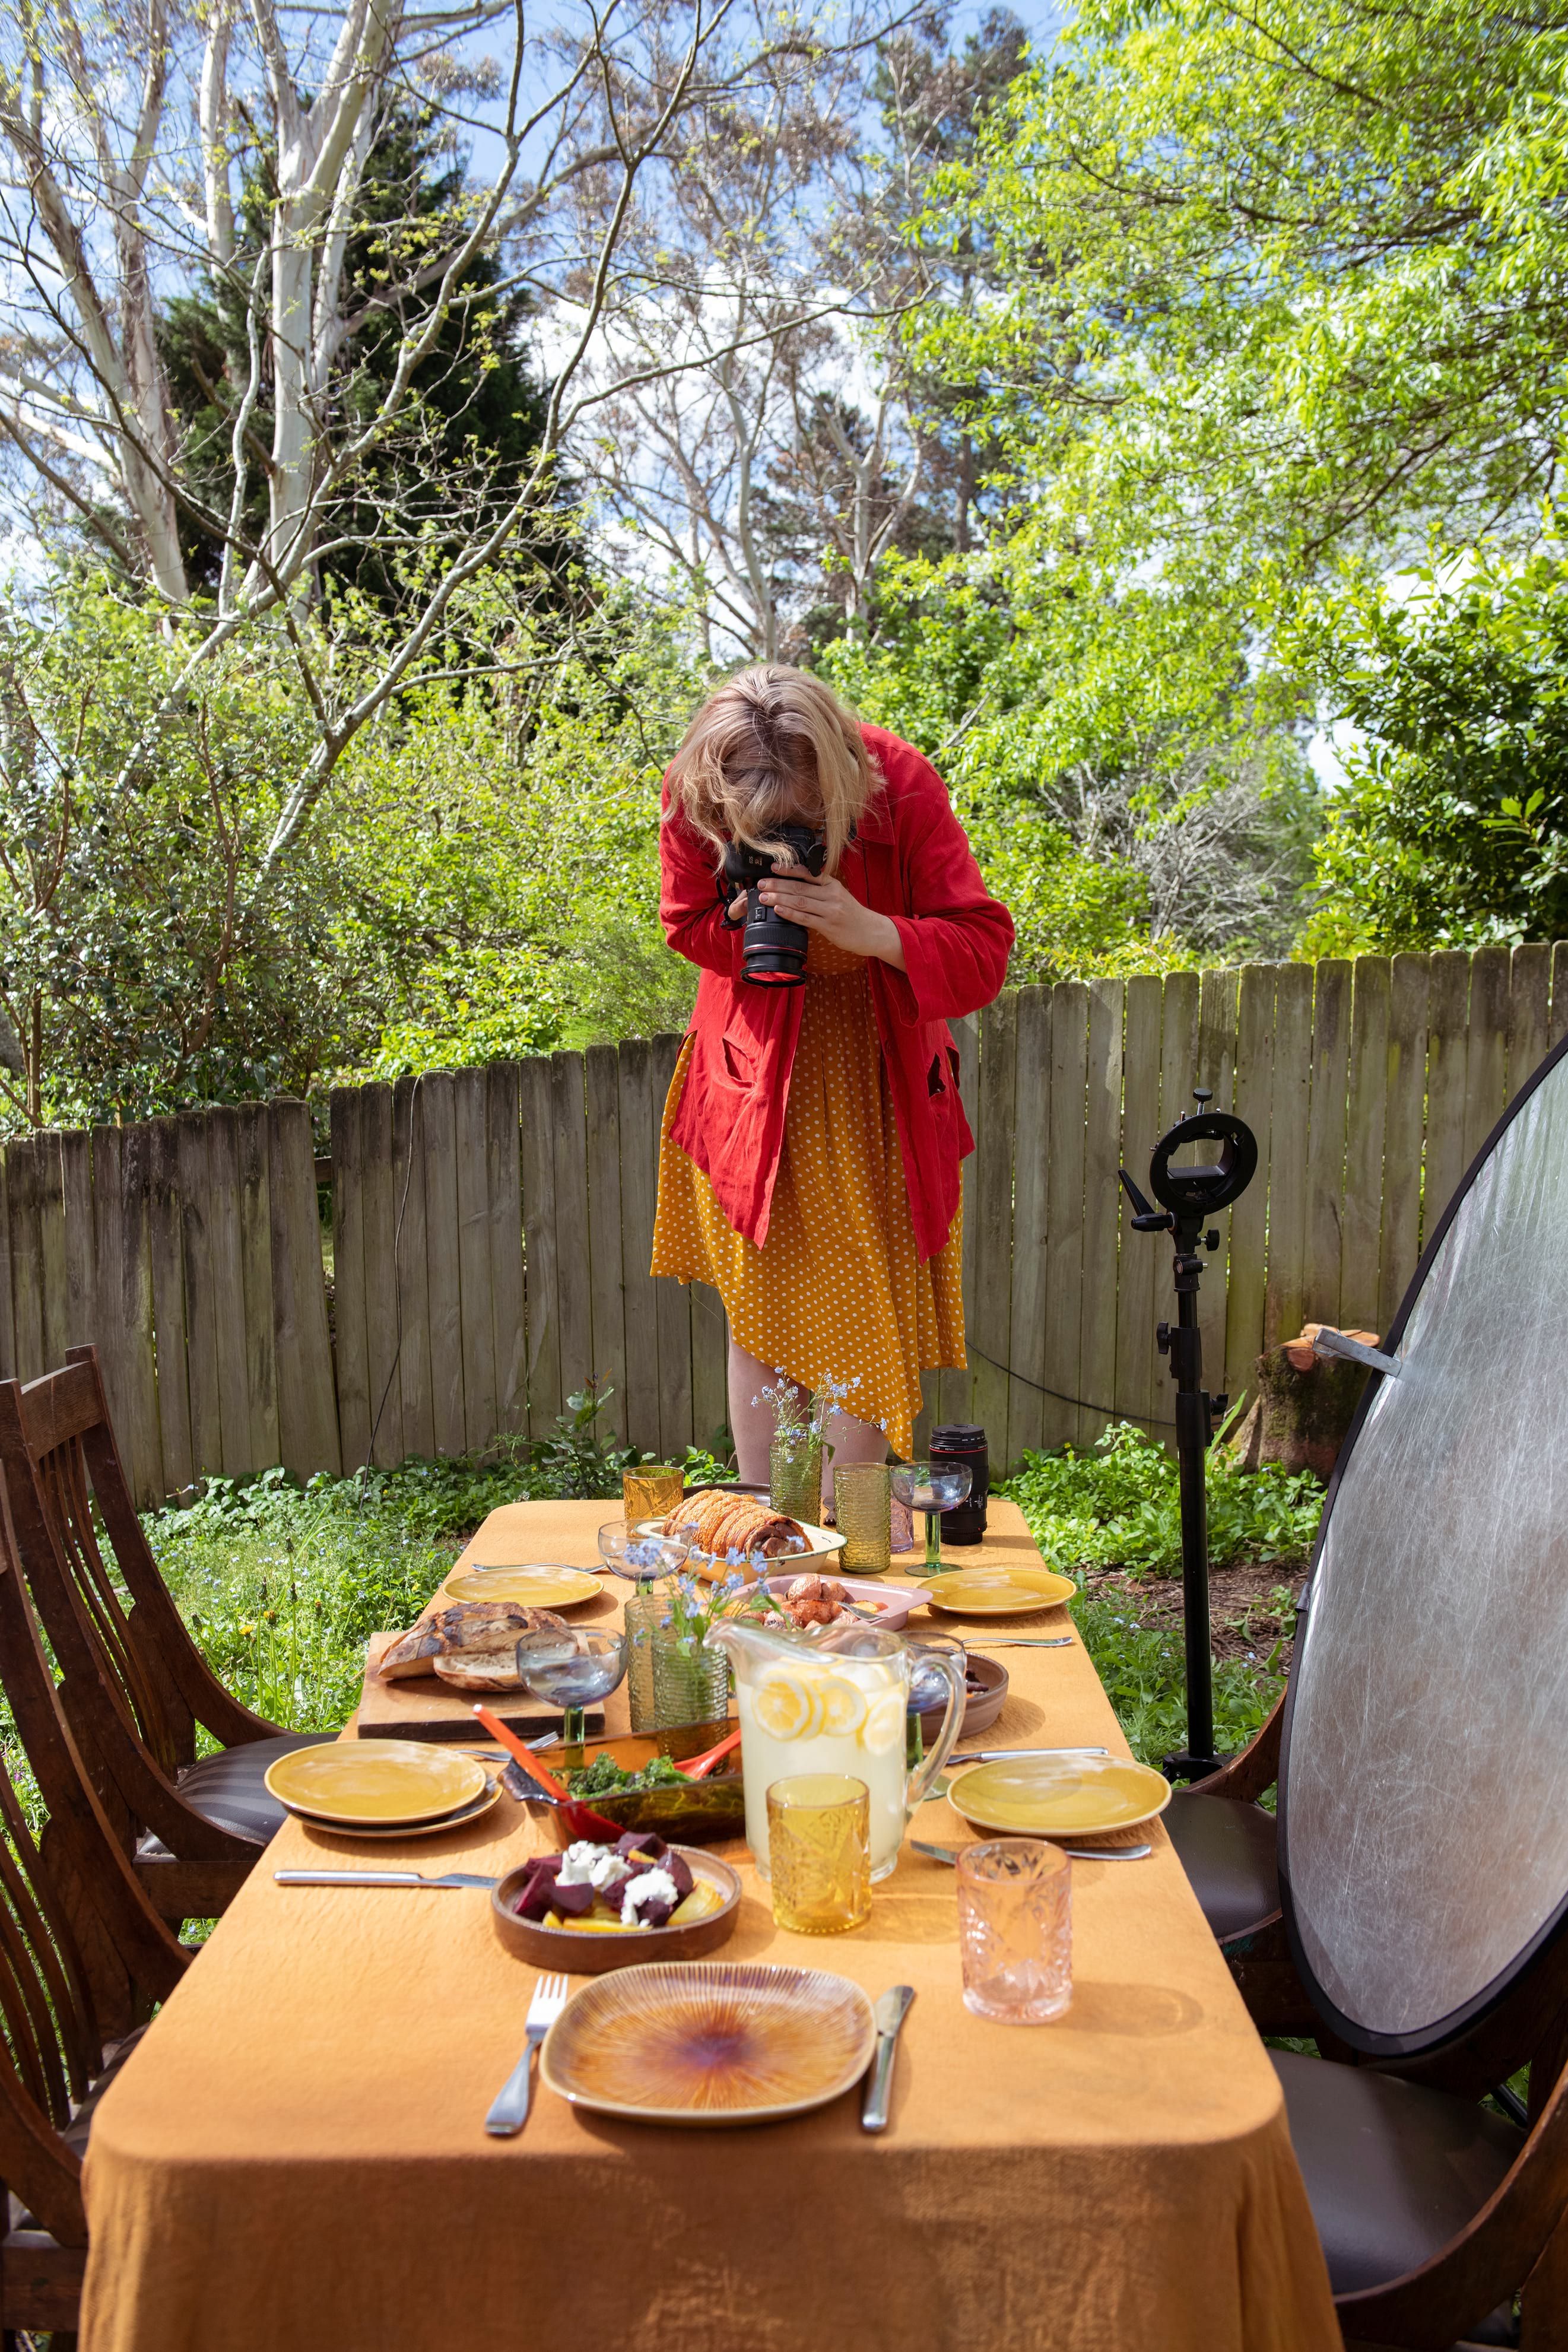 Uma mulher tirando uma foto de uma mesa com comida.